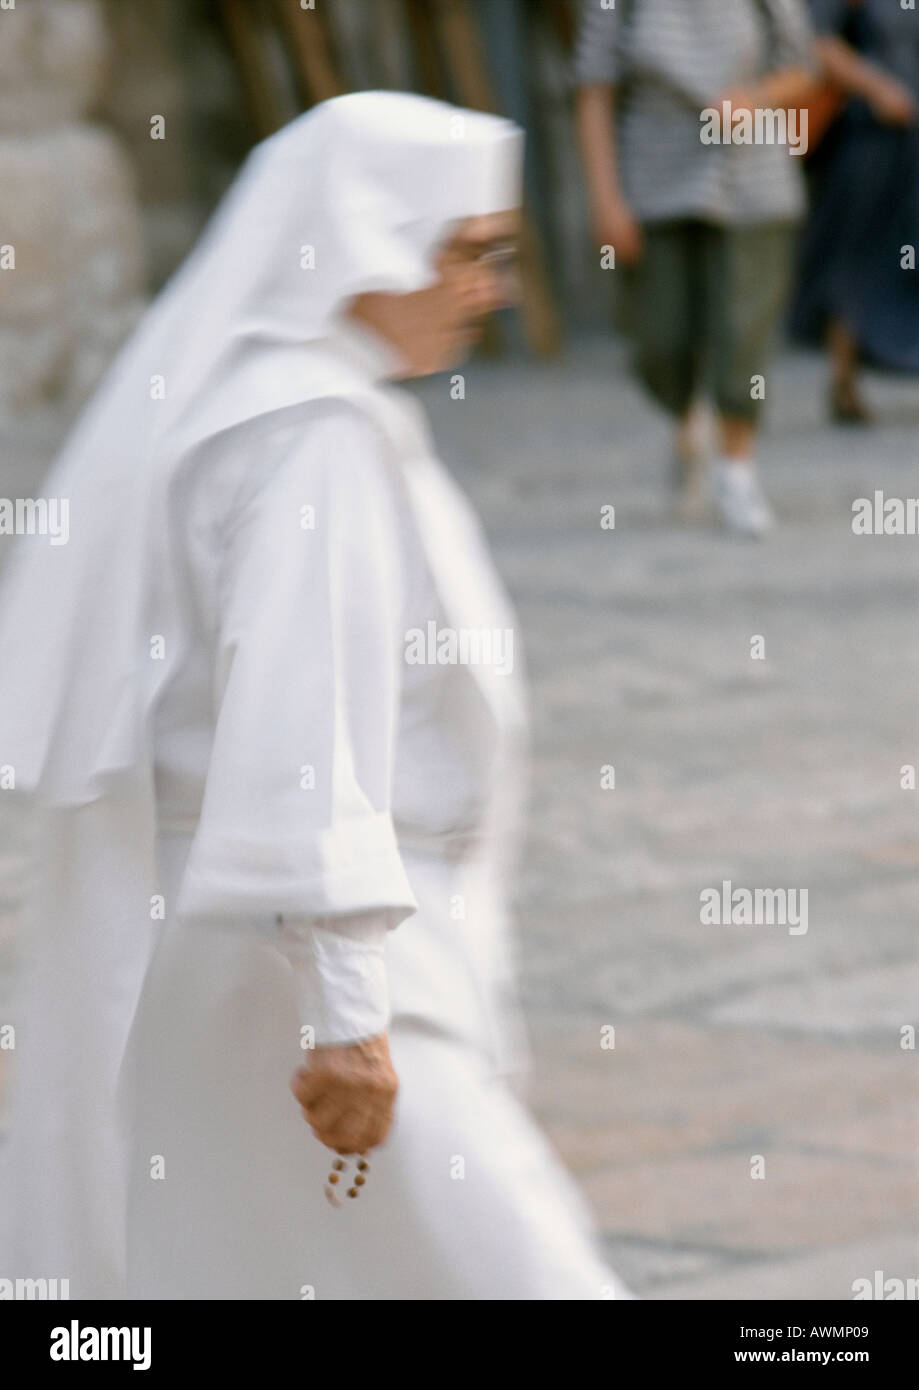 Nun walking in street, side view Stock Photo